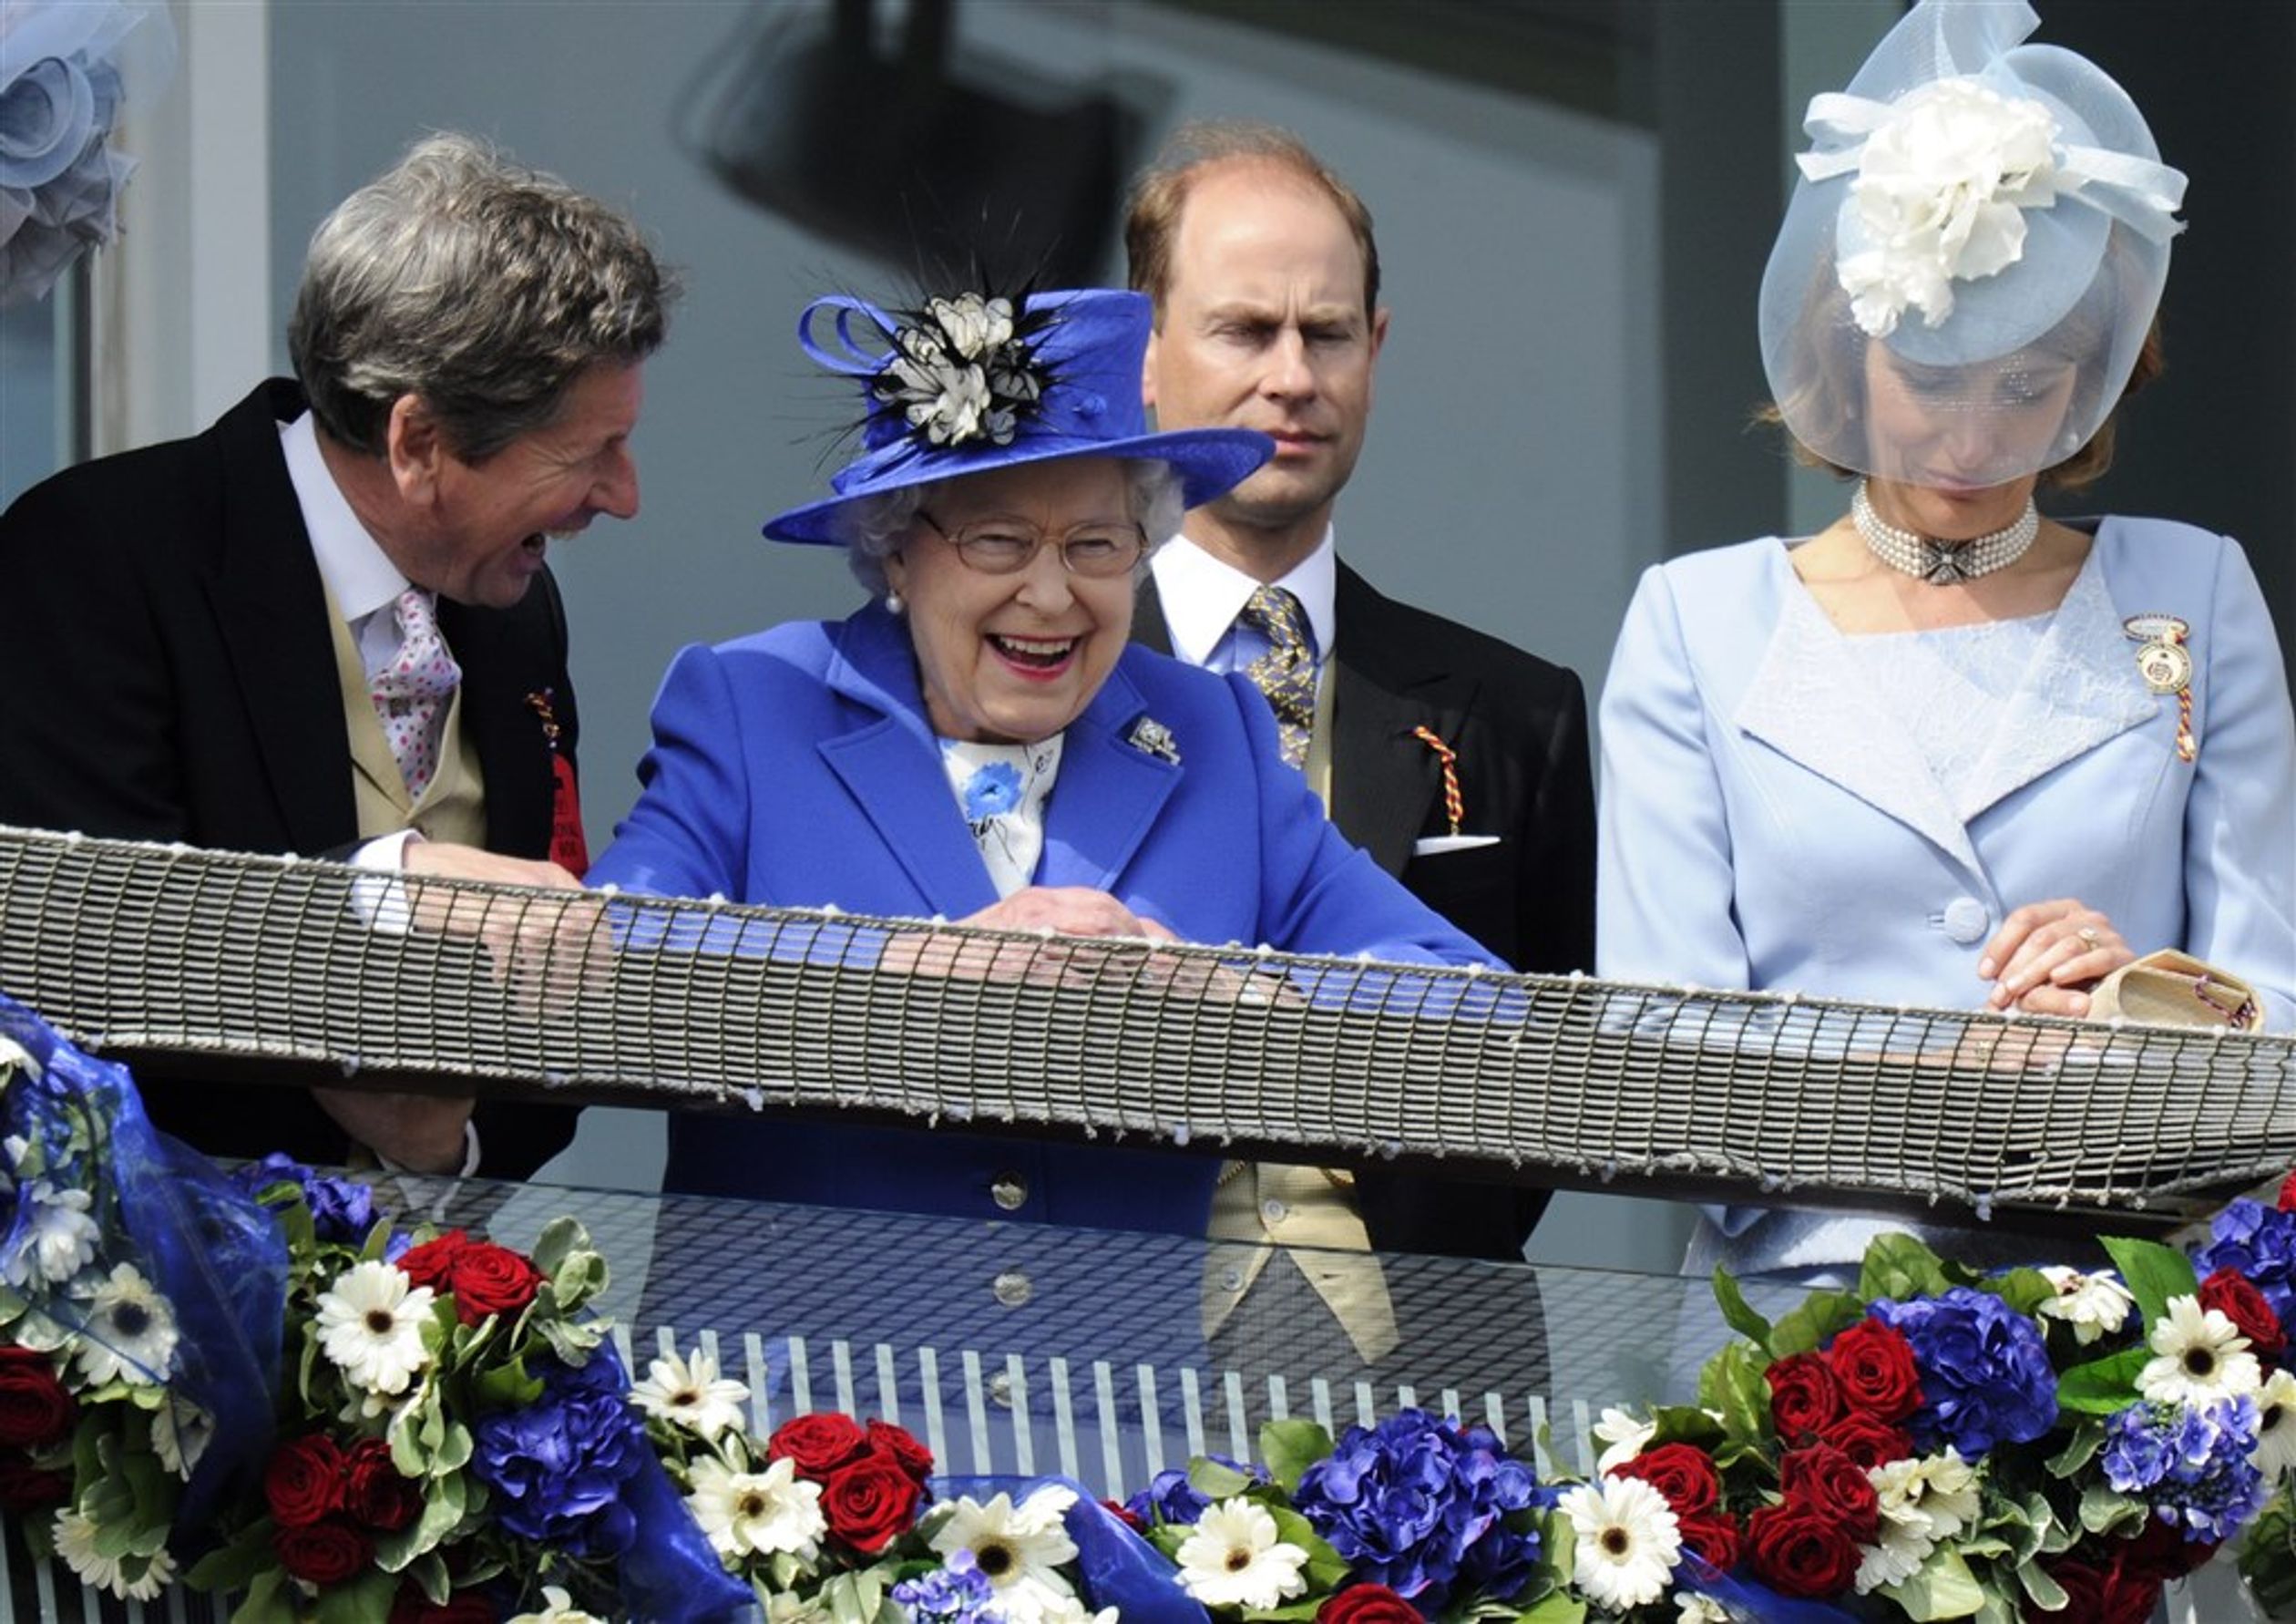 Tijdens een Derby-bijeenkomst in 2012 op de renbaan van Epsom, nabij Londen, lacht The Queen met